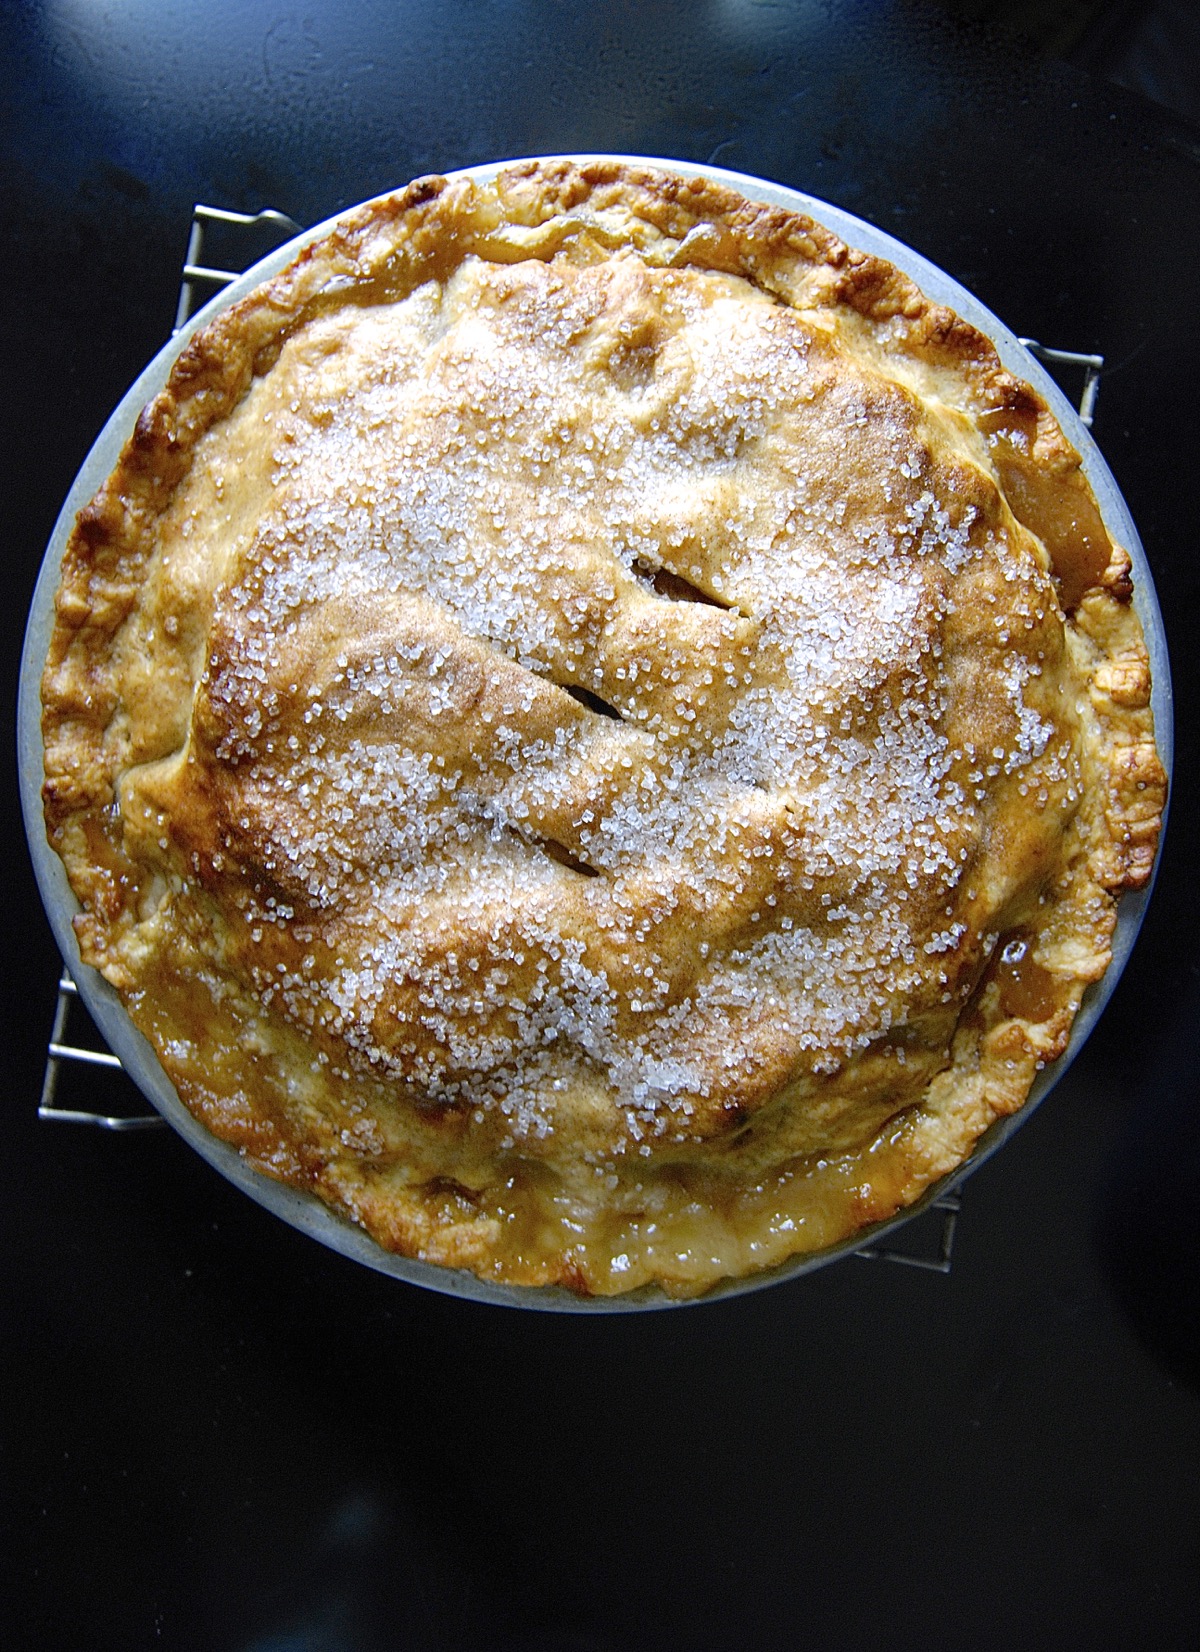 Best pie apples via @kingarthurflour